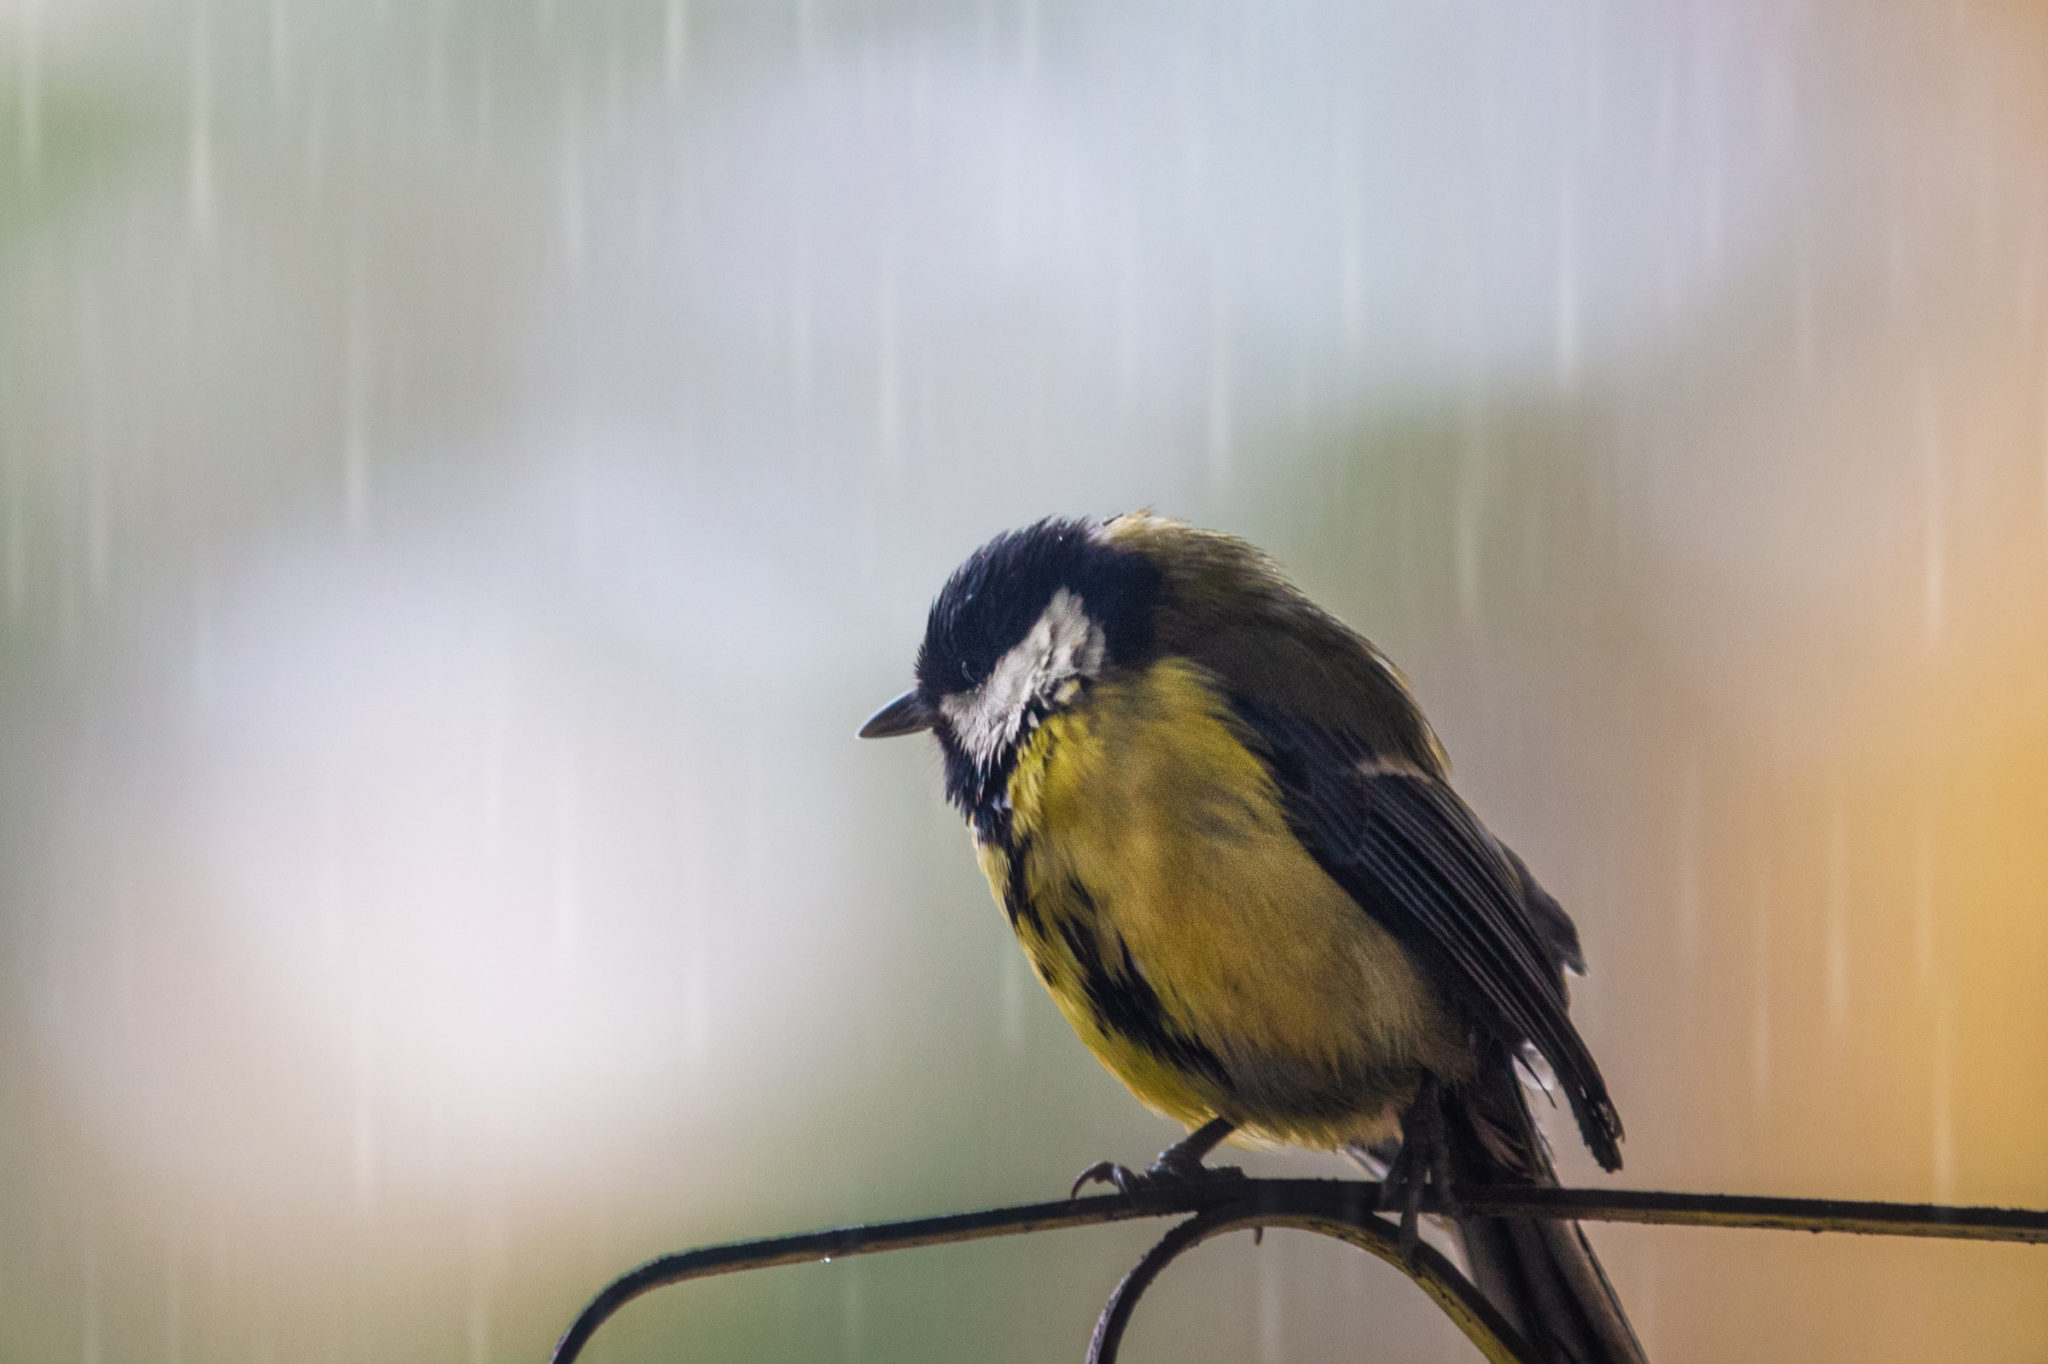 Vogel im Regen von Saad Chaudhry – Unsplash.com